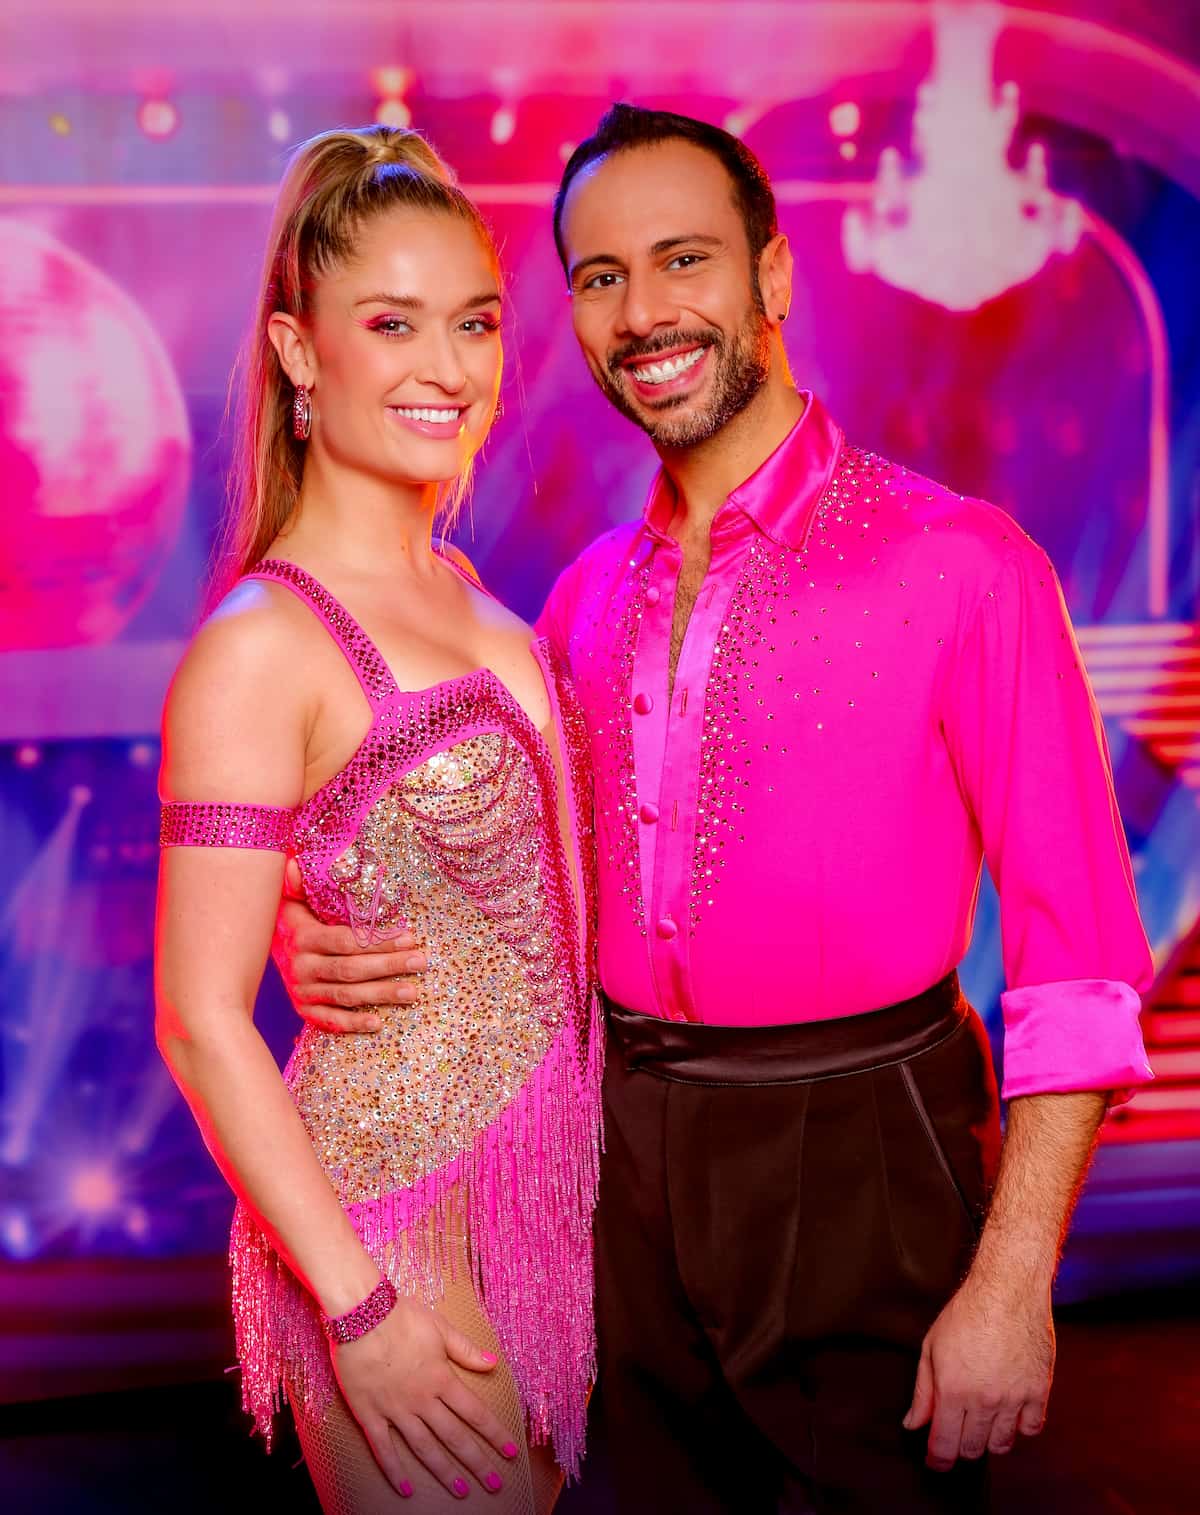 Corinna Kamper und Danilo Campisi in den Kostümen für den Jive bei den Dancing Stars 17.3.2023